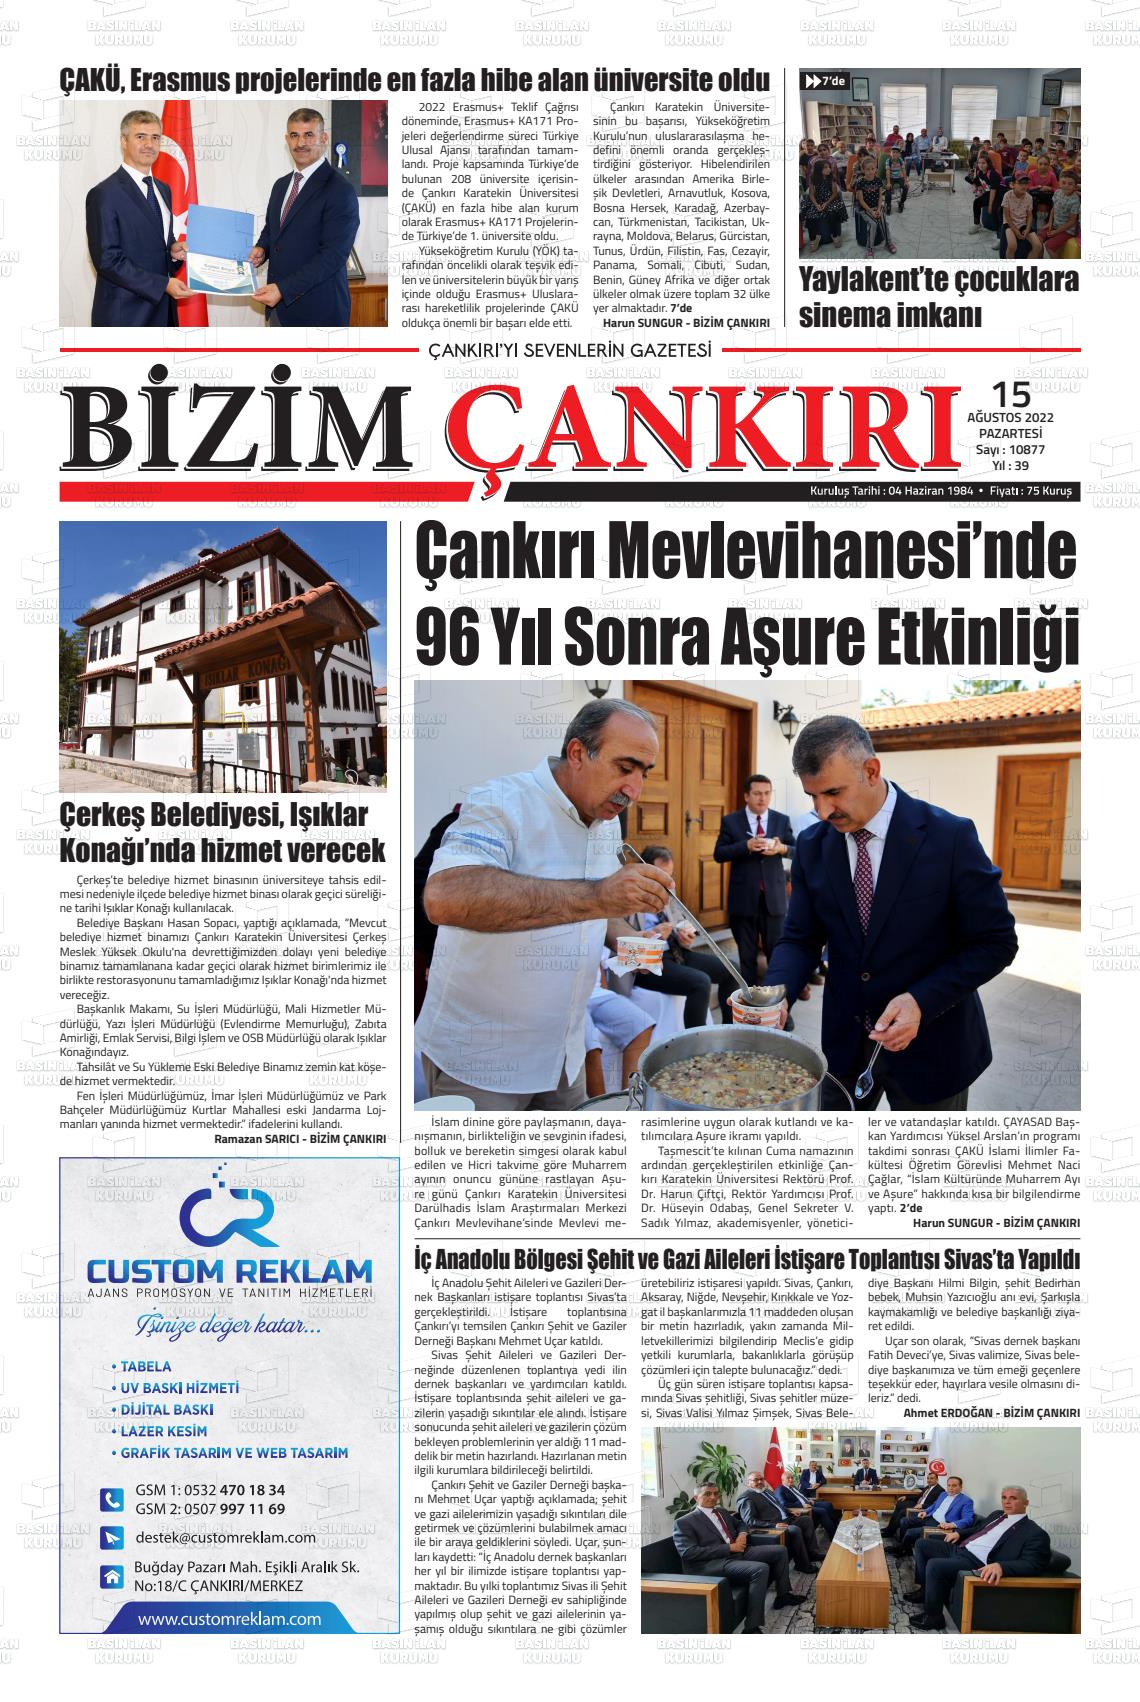 15 Ağustos 2022 Bizim Çankırı Gazete Manşeti